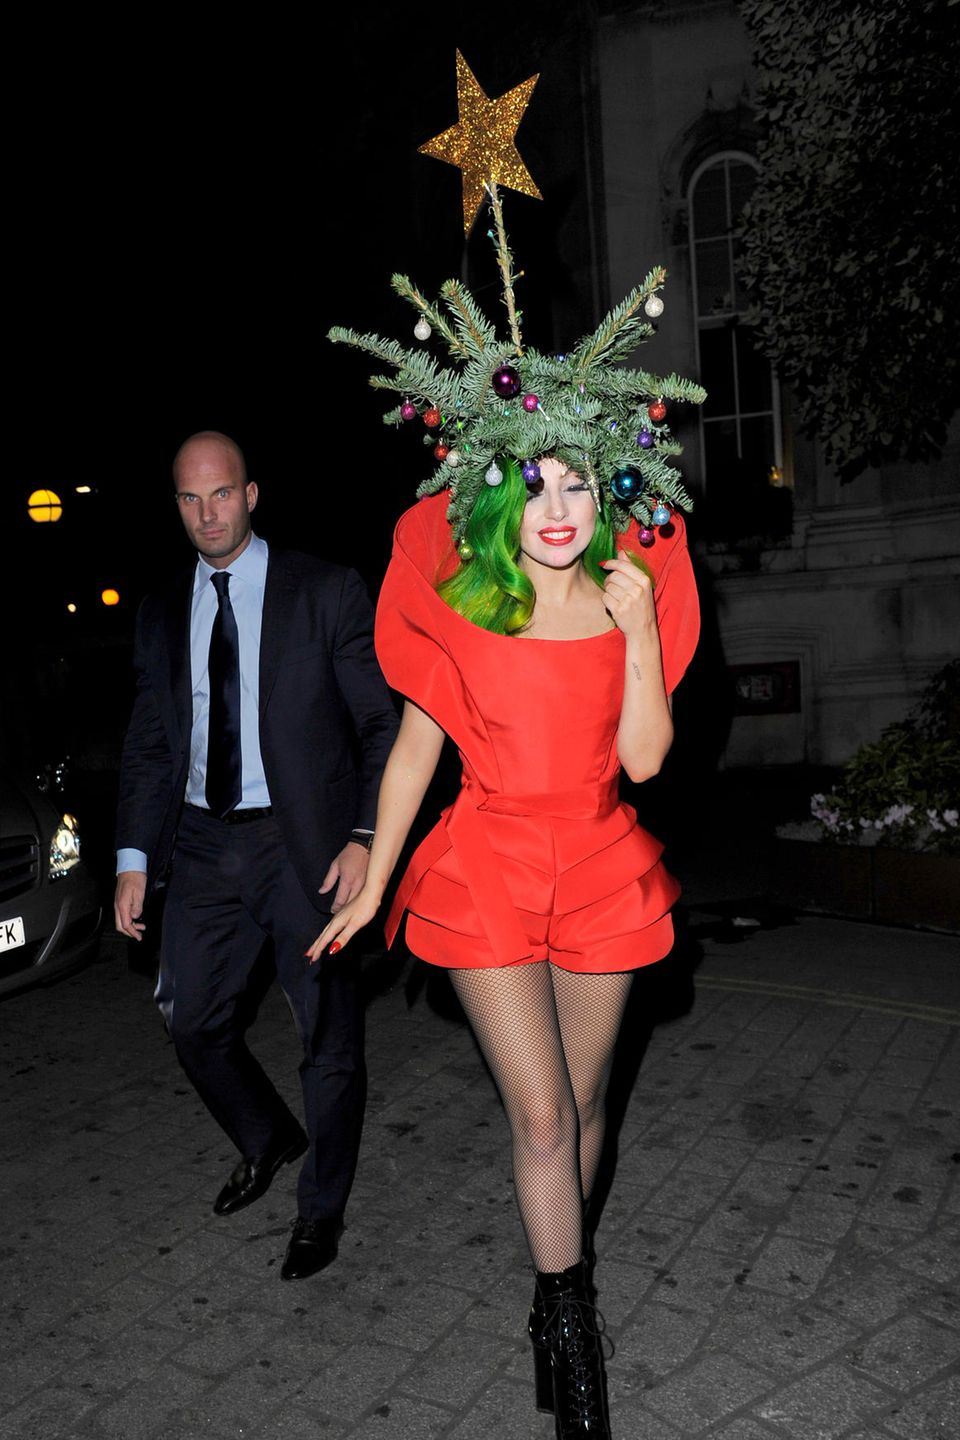 Wie ein Chamäleon schlüpft Lady Gaga in jede Rolle: Im winterlichen London verwandelt sie sich glatt selbst in einen Tannenbaum. Auf grünen Haaren trägt sie echte Tannenzweige, geschmückt mit bunten Weihnachtskugeln.